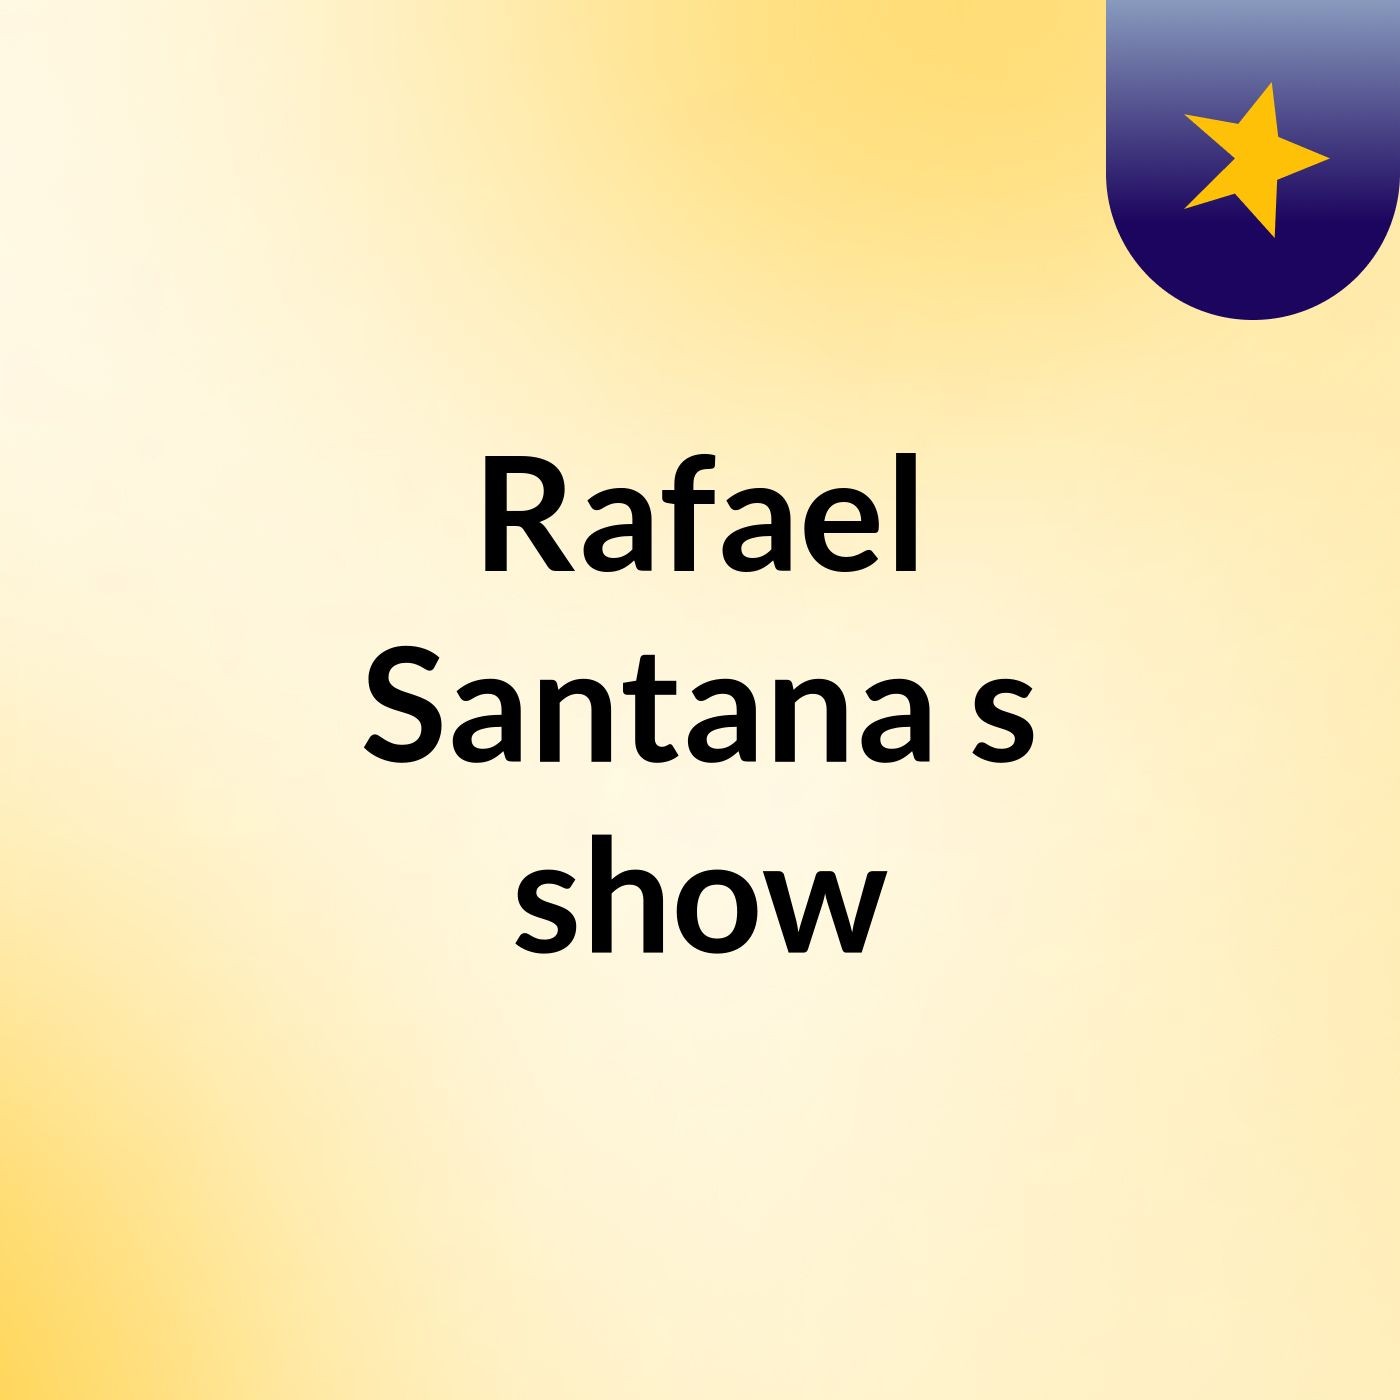 Rafael Santana's show